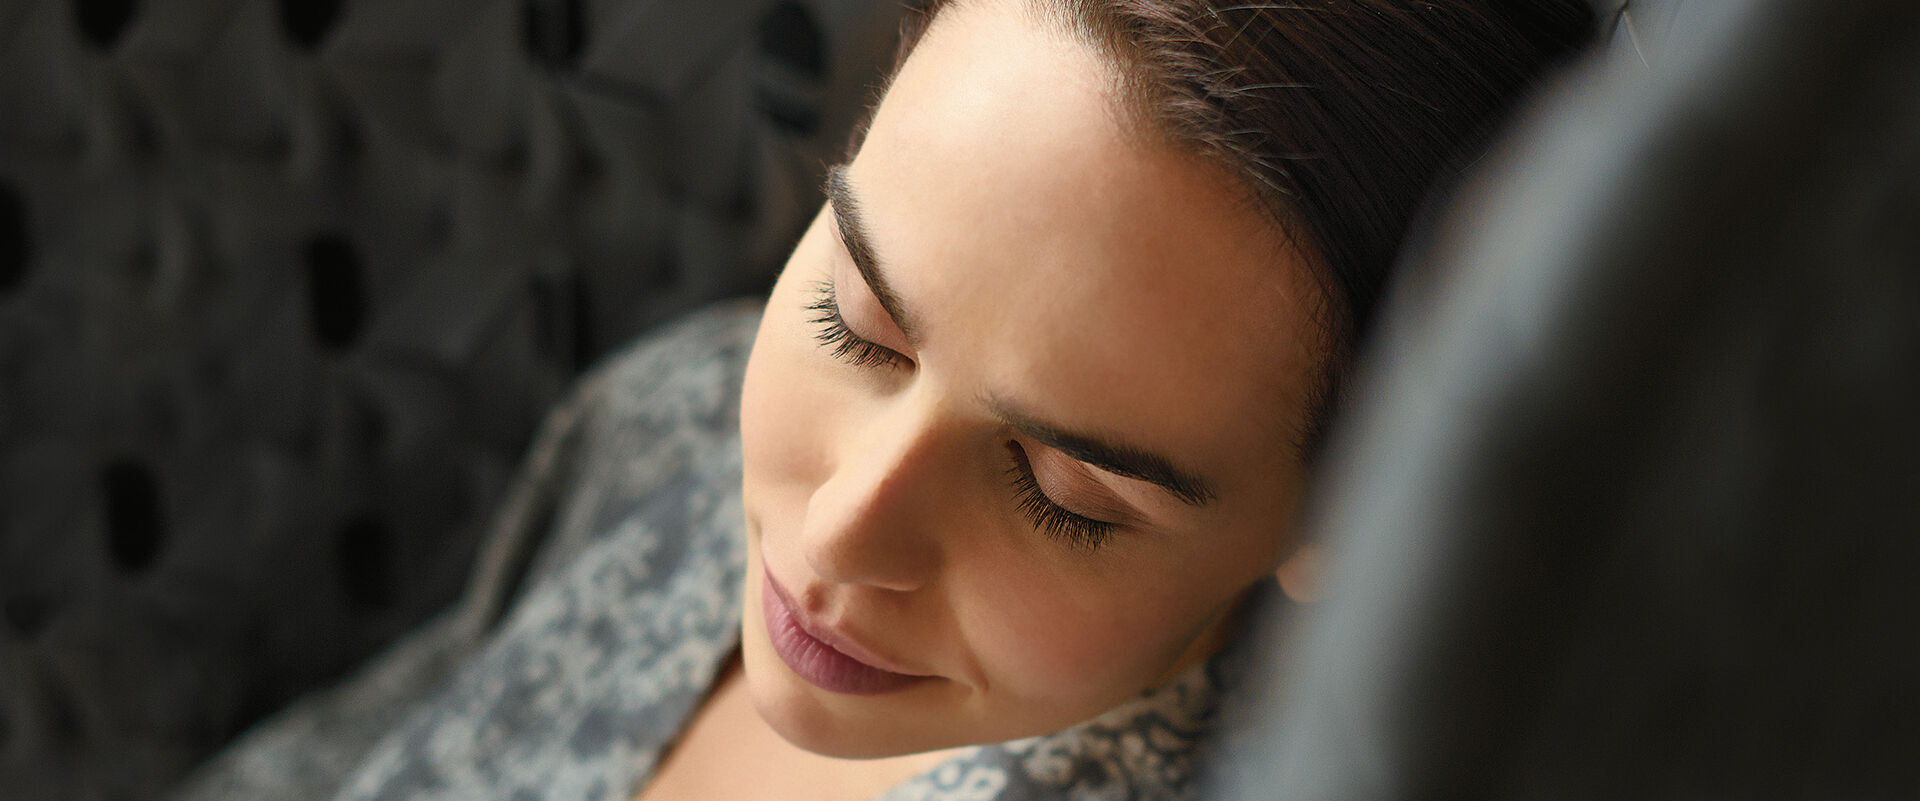 Frau entspannt in einem Kormstuhl mit geschlossenen Augen.